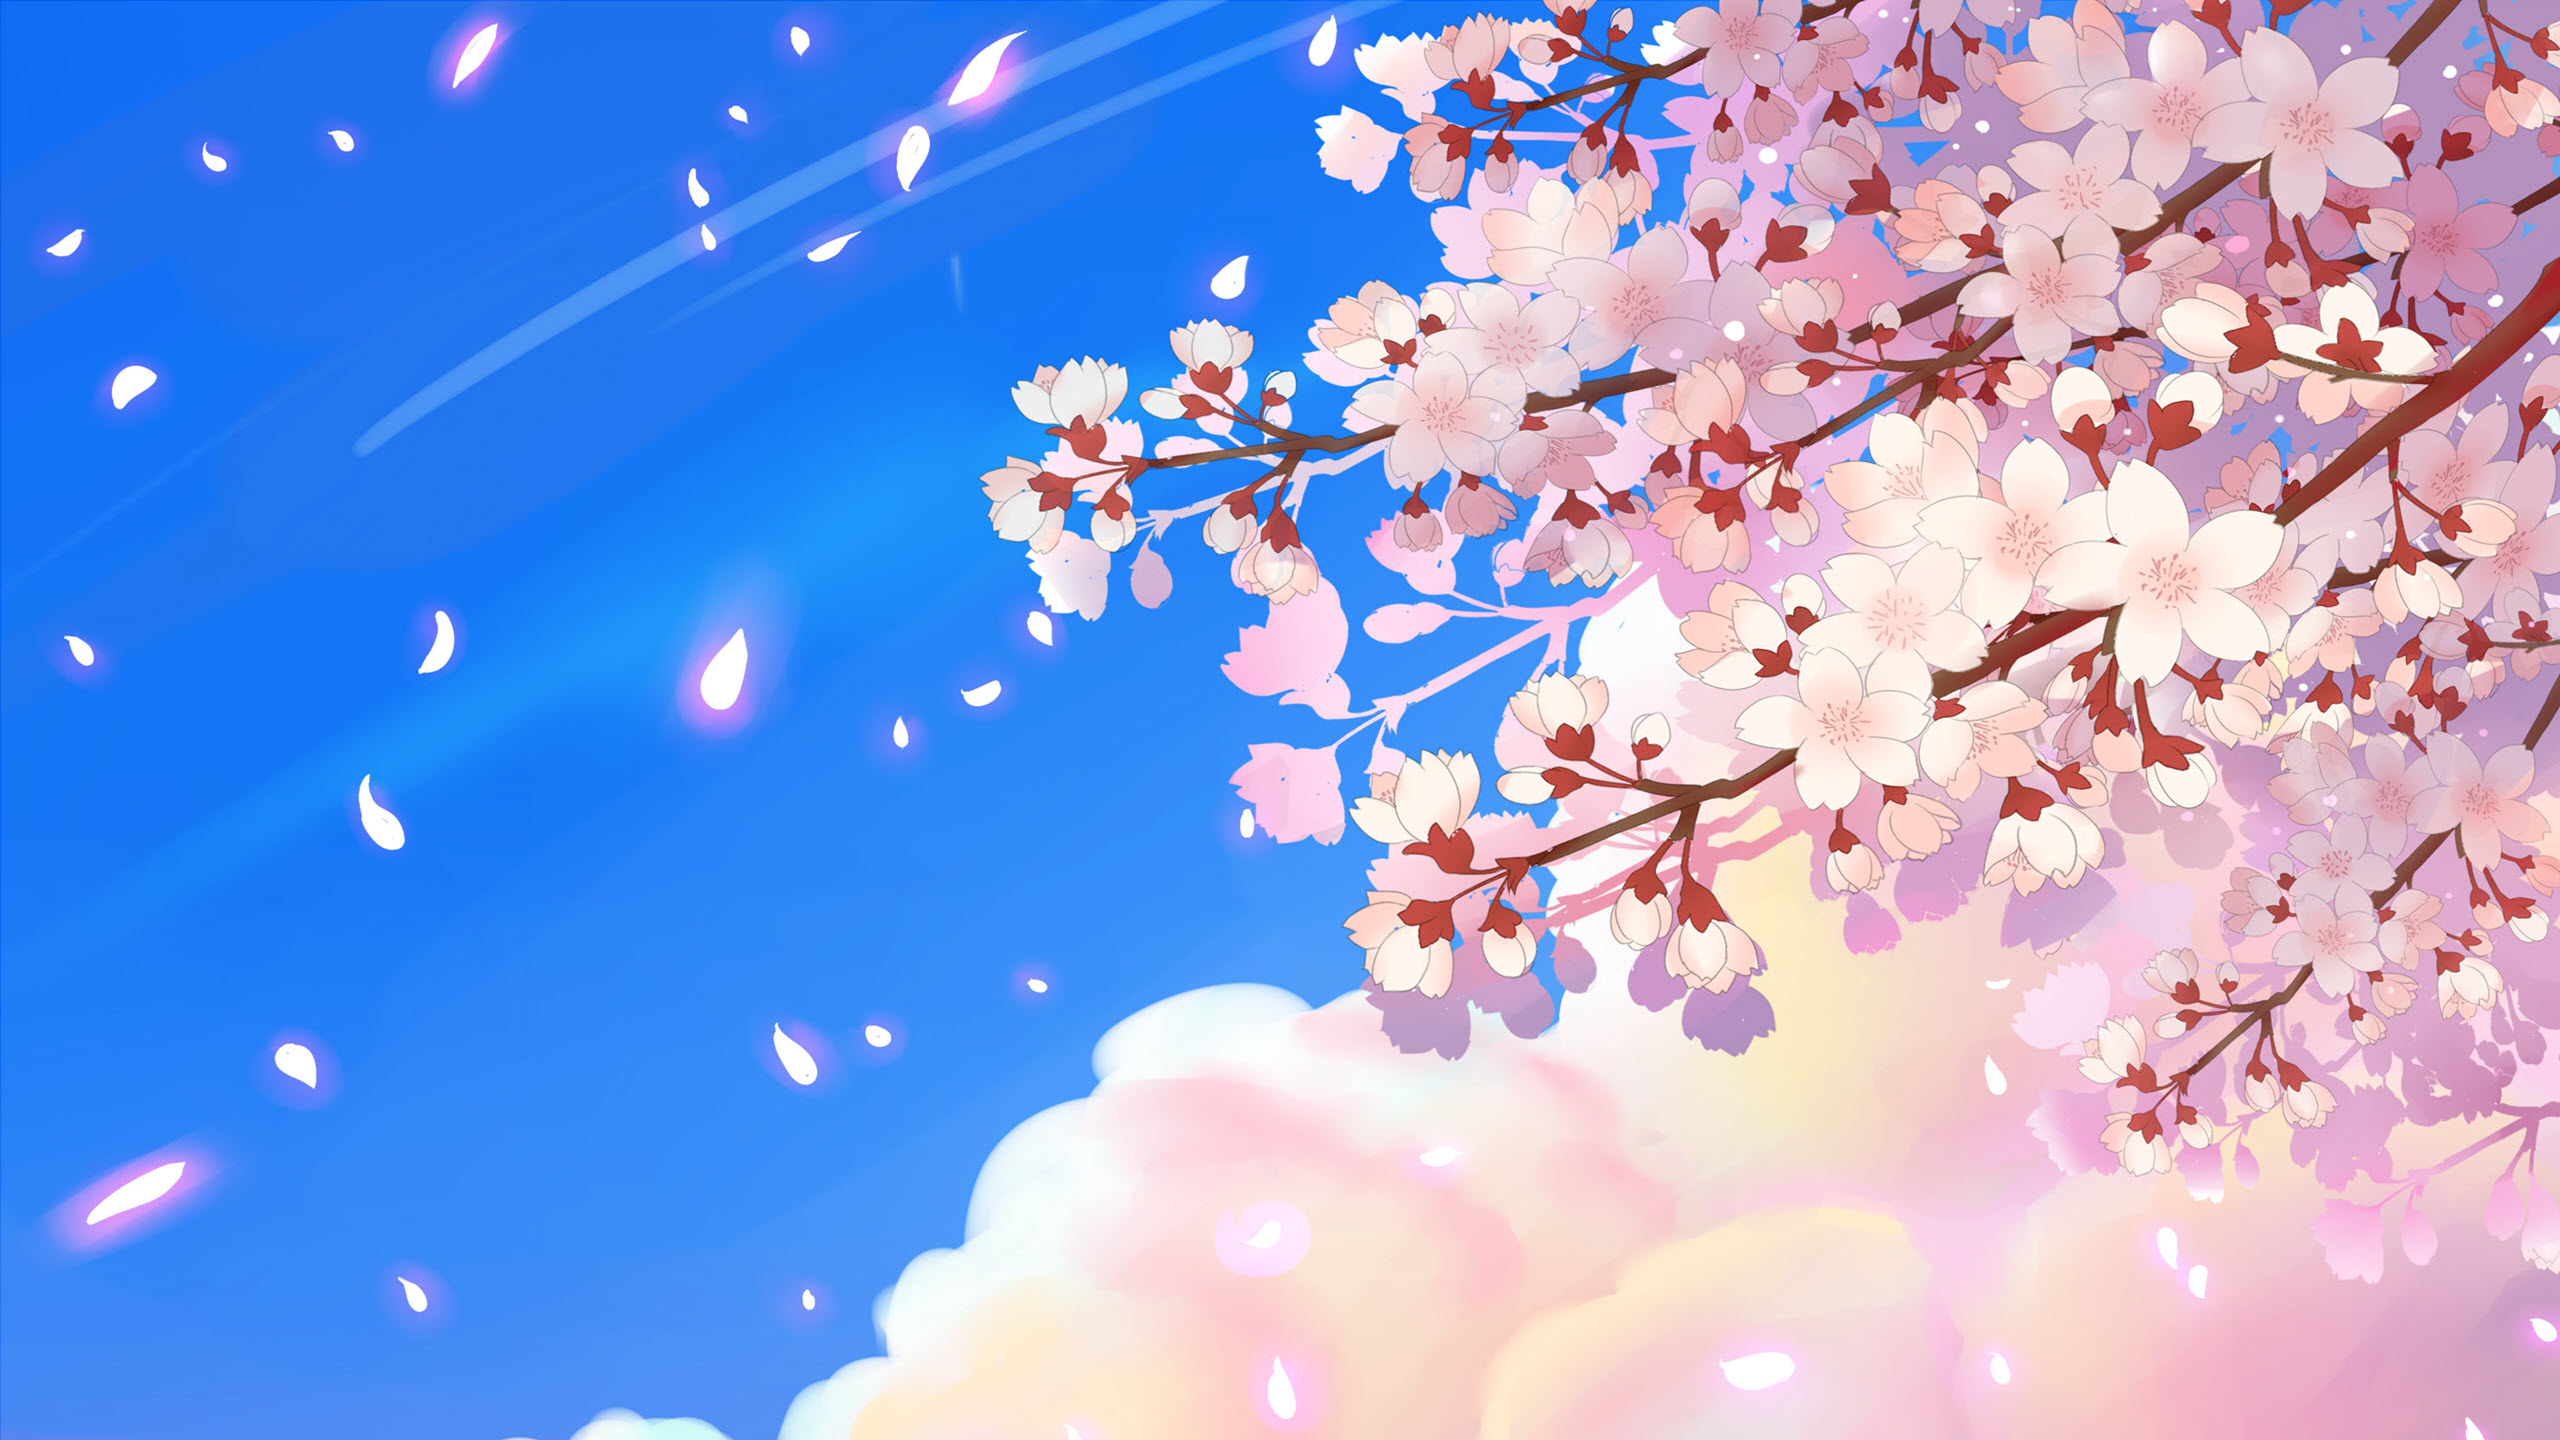 Hình ảnh hoa anh đào anime đẹp miễn chê